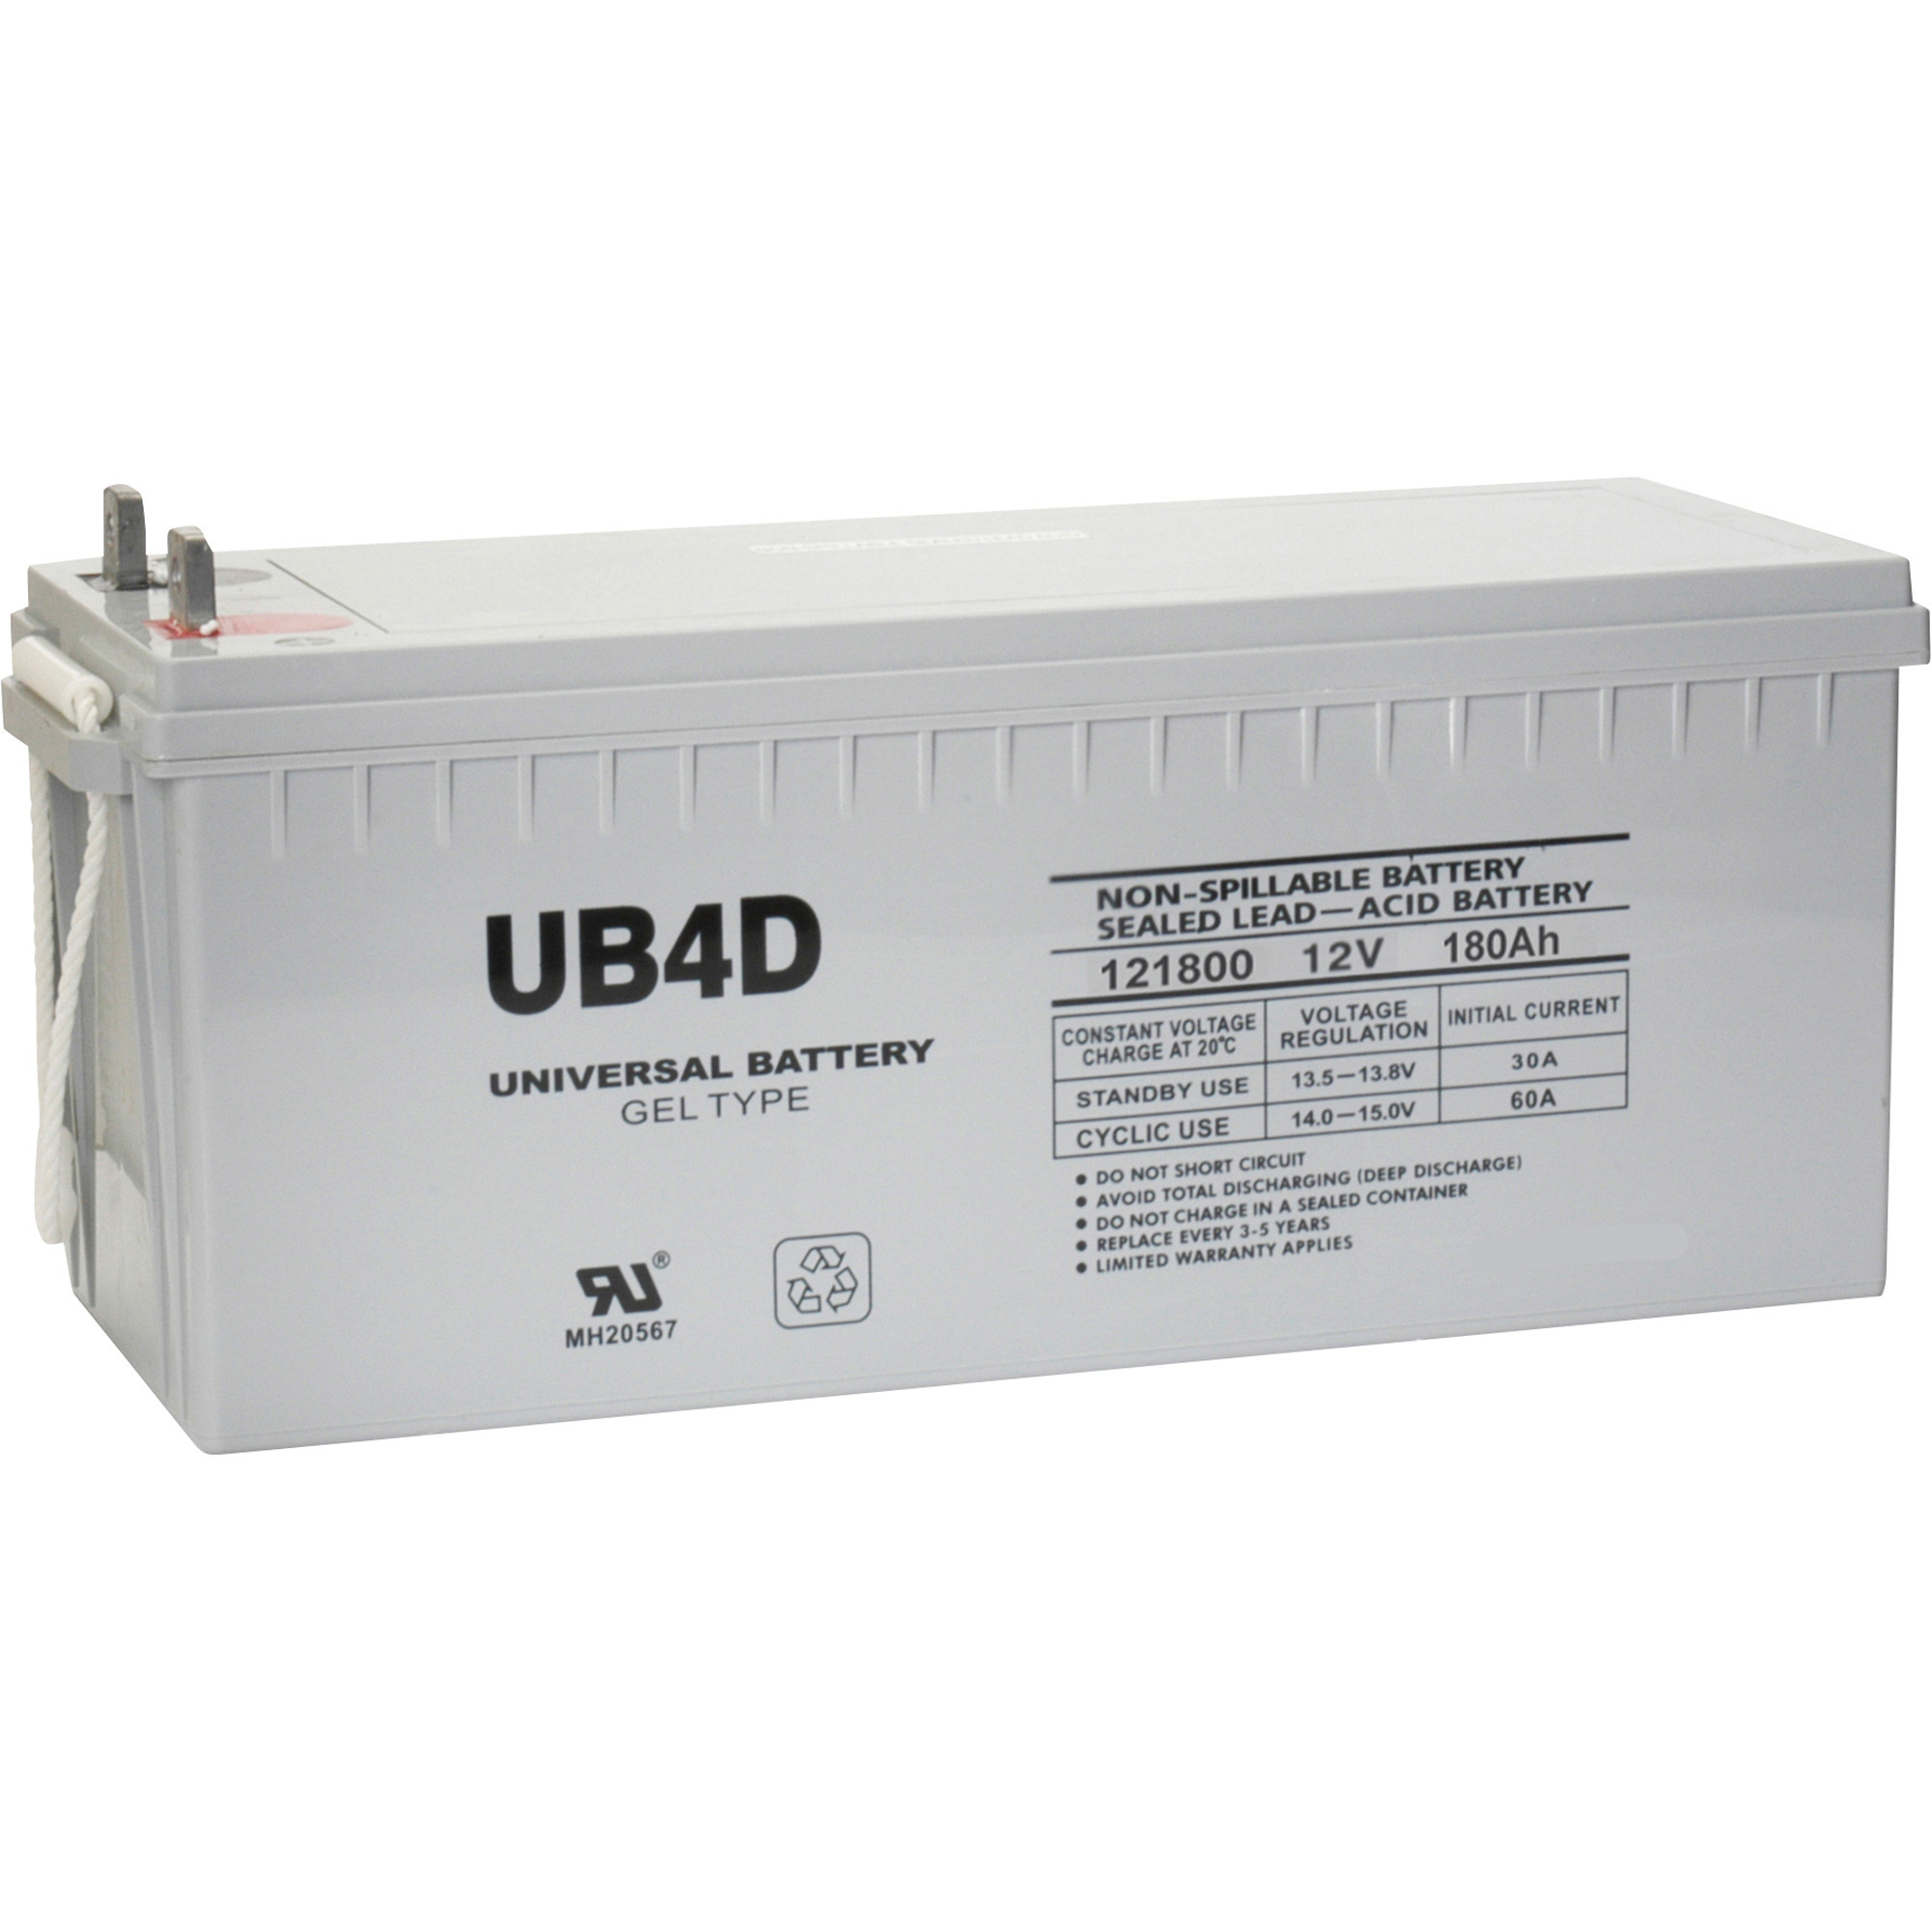 UPG Universal Sealed Lead-Acid Battery, GEL-type, 12V, 180 Ah, Group 4D, Model UB-4D